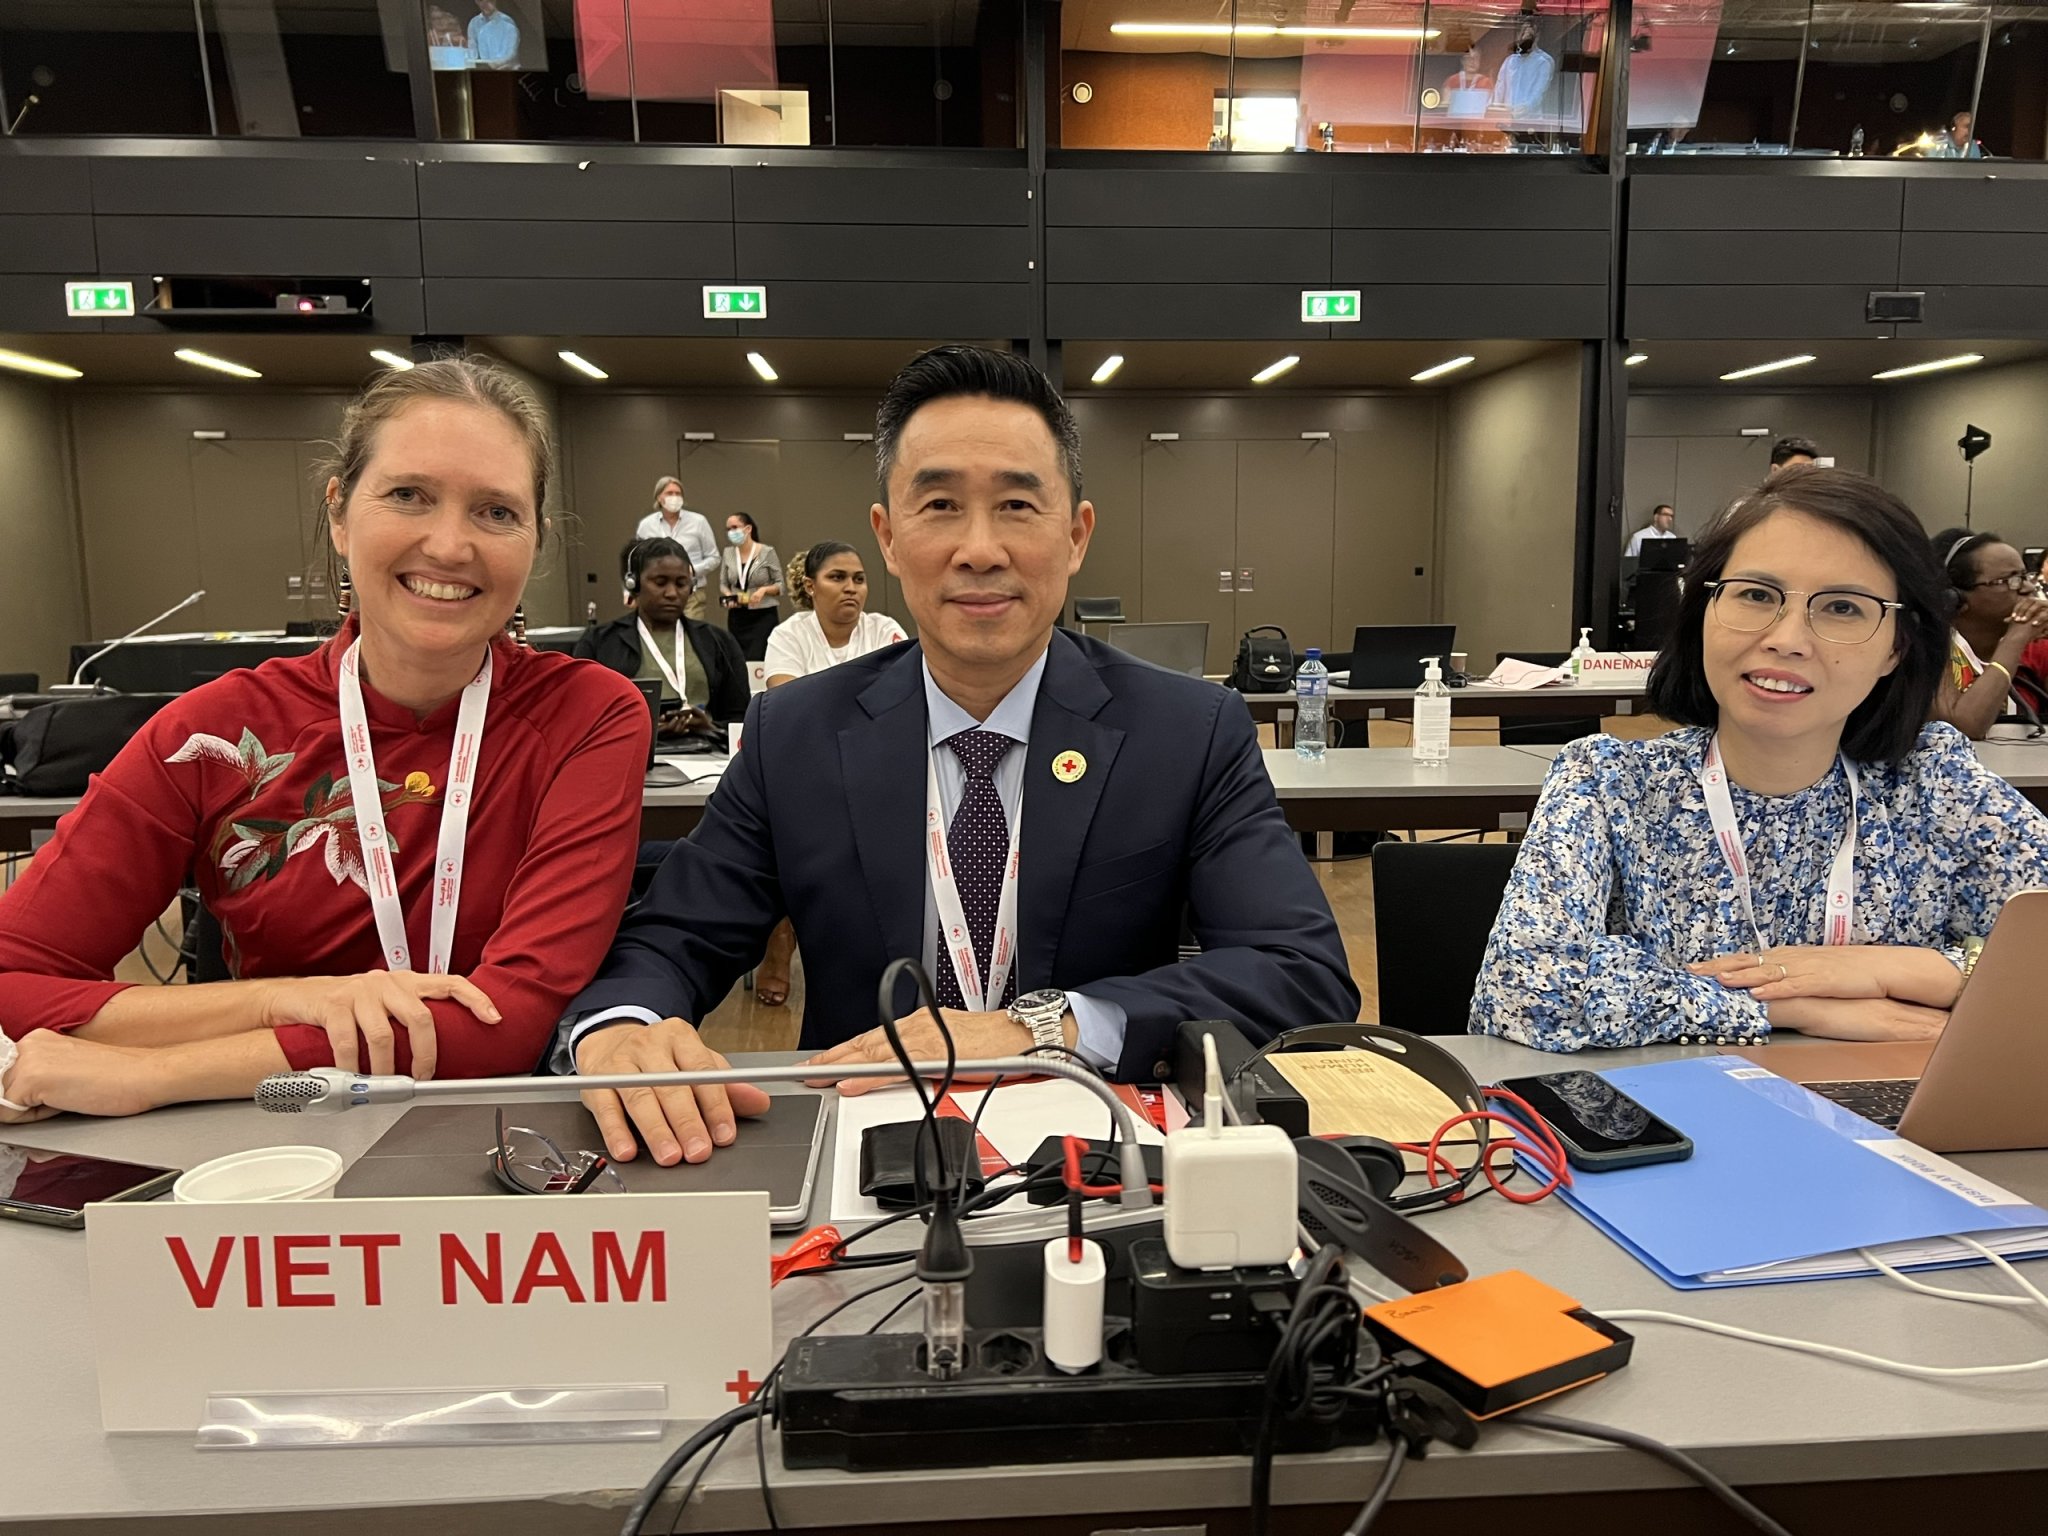 Hội Chữ thập đỏ Việt Nam tham dự Đại hội đồng Hiệp Hội Chữ thập đỏ và Trăng lưỡi liềm đỏ quốc tế lần thứ 23 - Ảnh 1.